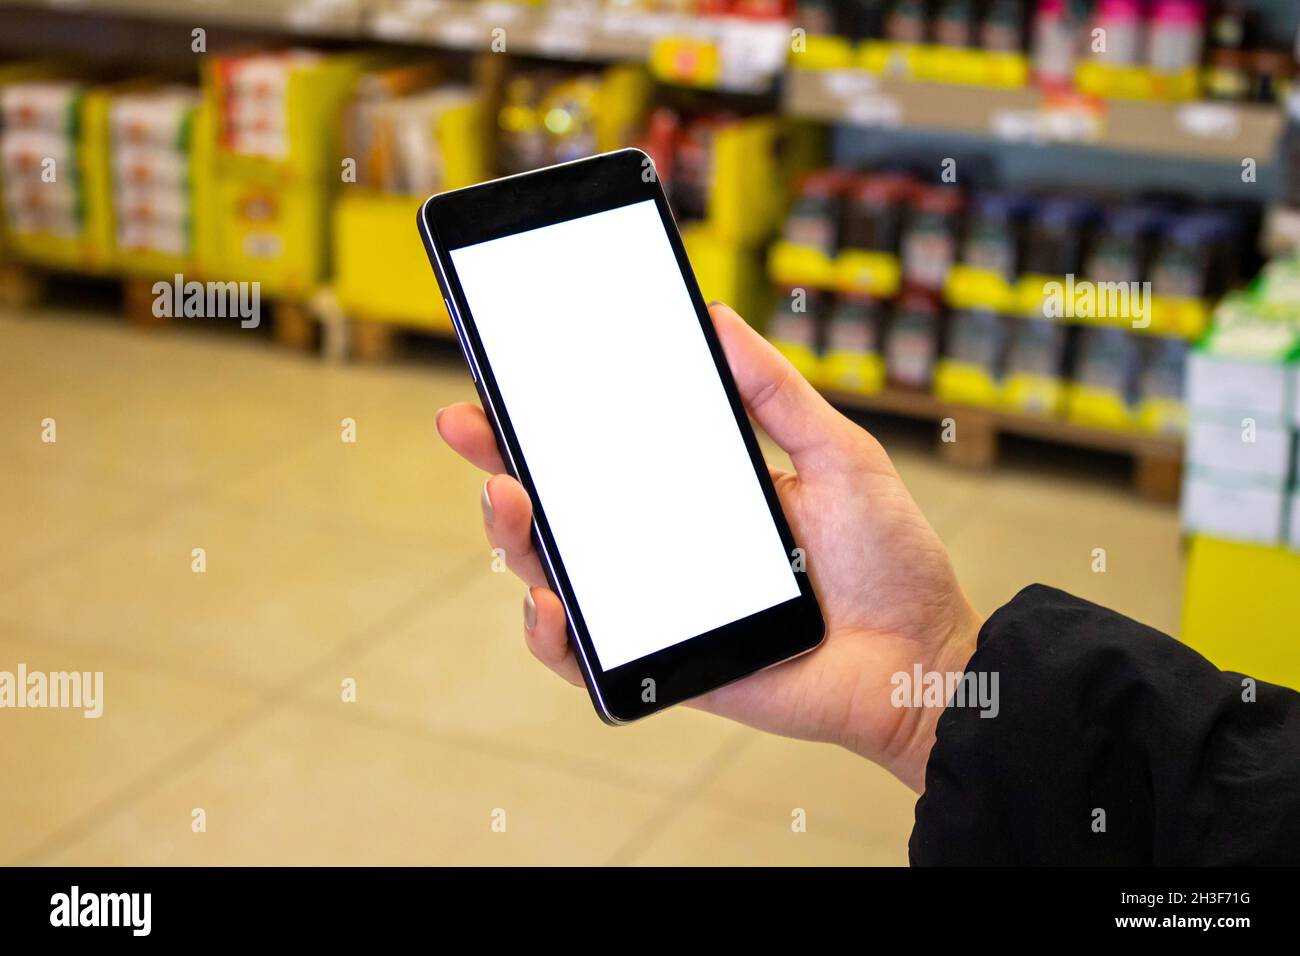 Mujer usando el teléfono móvil, burla imagen de la mano femenina sosteniendo el teléfono móvil con pantalla blanca en el supermercado. Foto de stock